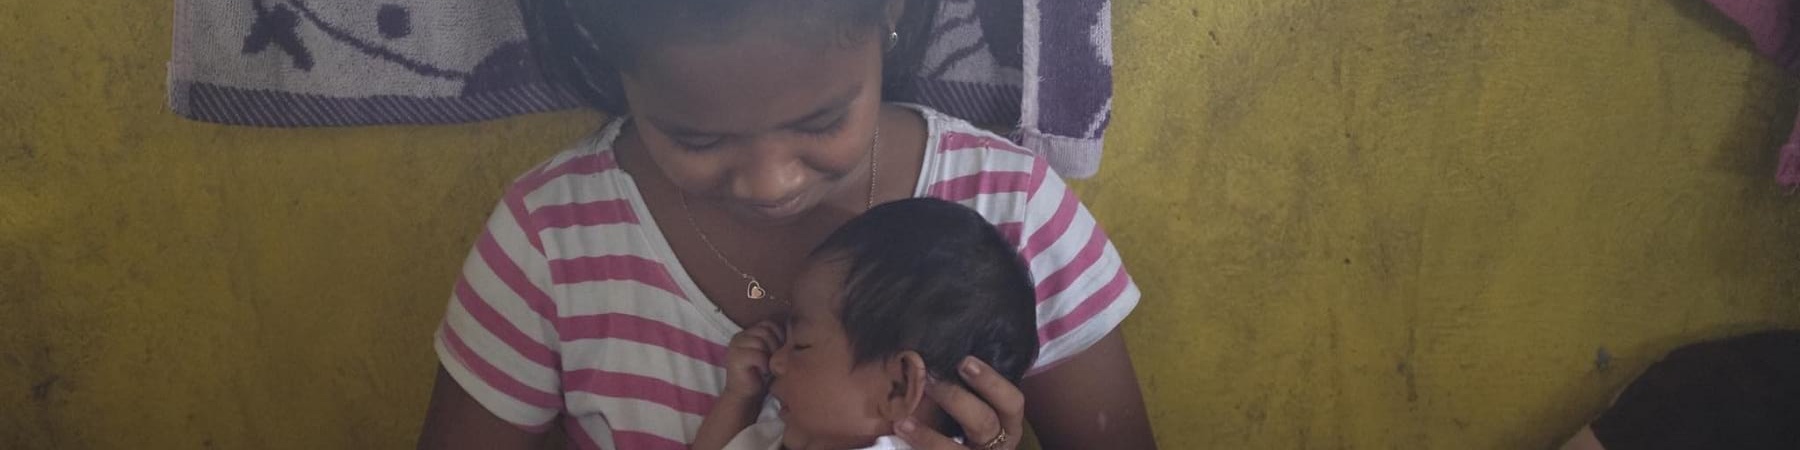 ragazza filippina sfollata tiene in braccio neonato